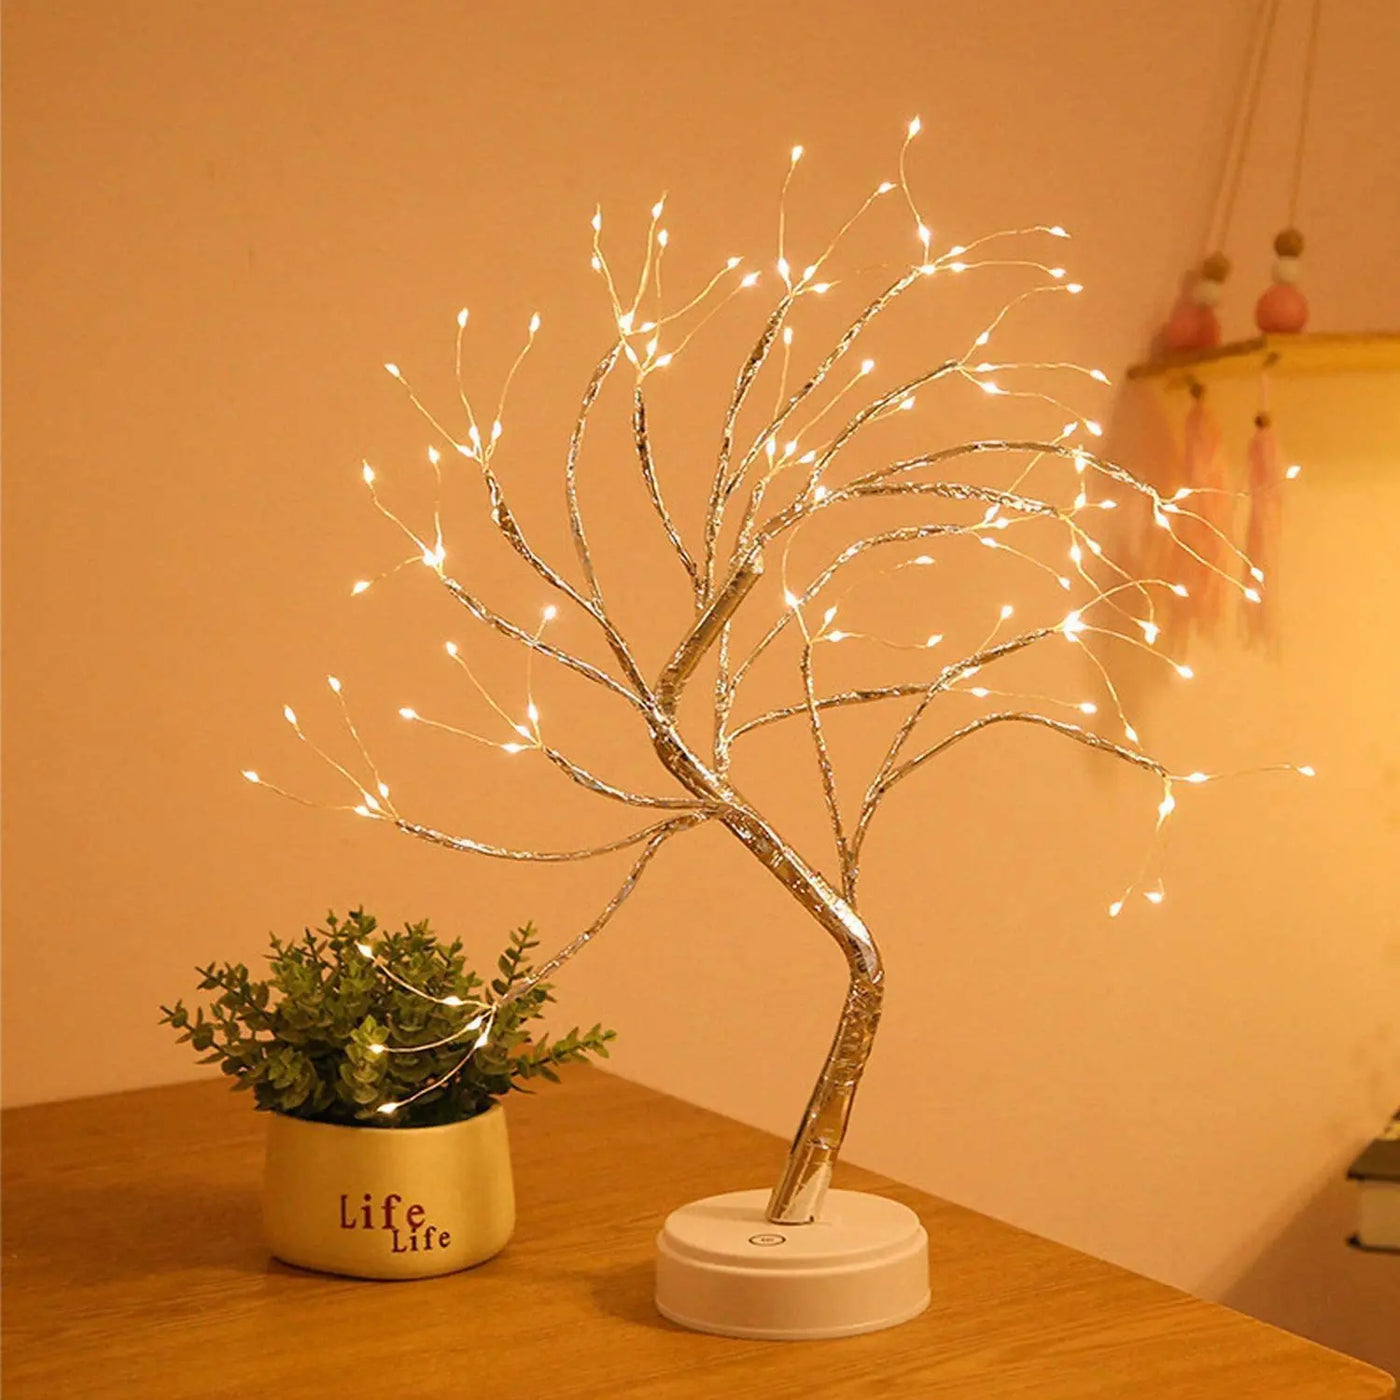 Tree Light Flower Tree Night Lamp - LED Table Branch Lamp for Living Bedroom Home Decor